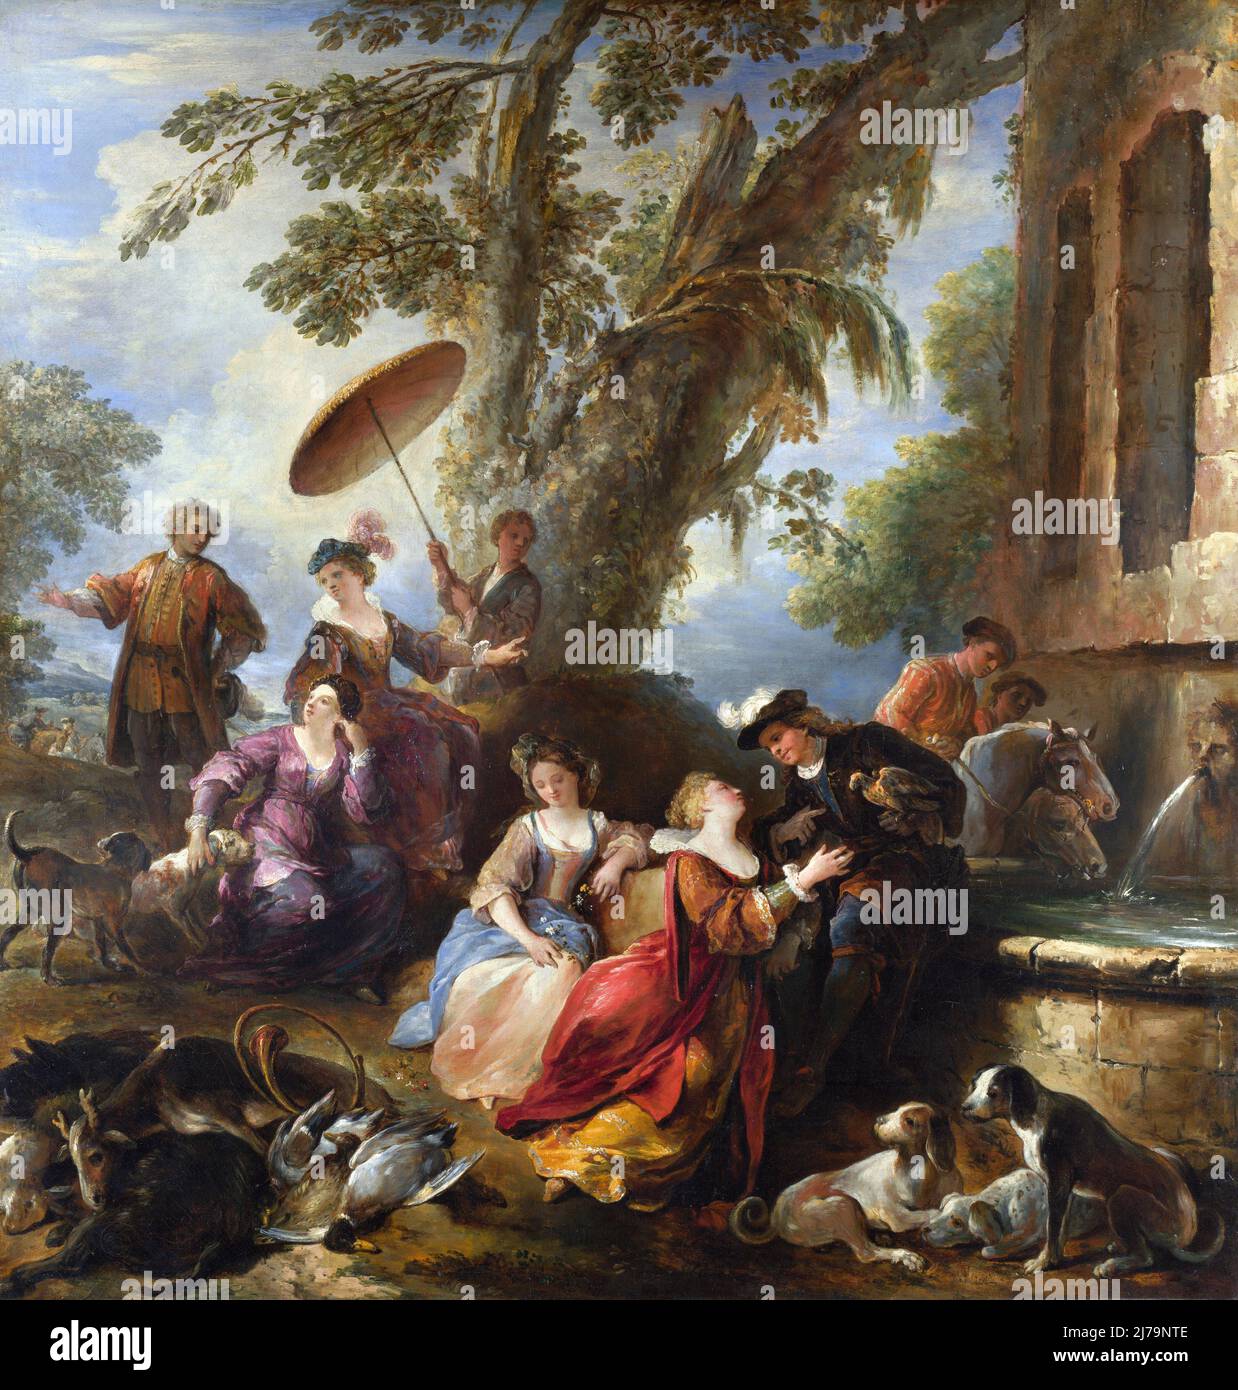 Le retour de la chasse par le peintre baroque français Joseph Parrocel (1646-1704), huile sur toile, c. 1700 Banque D'Images